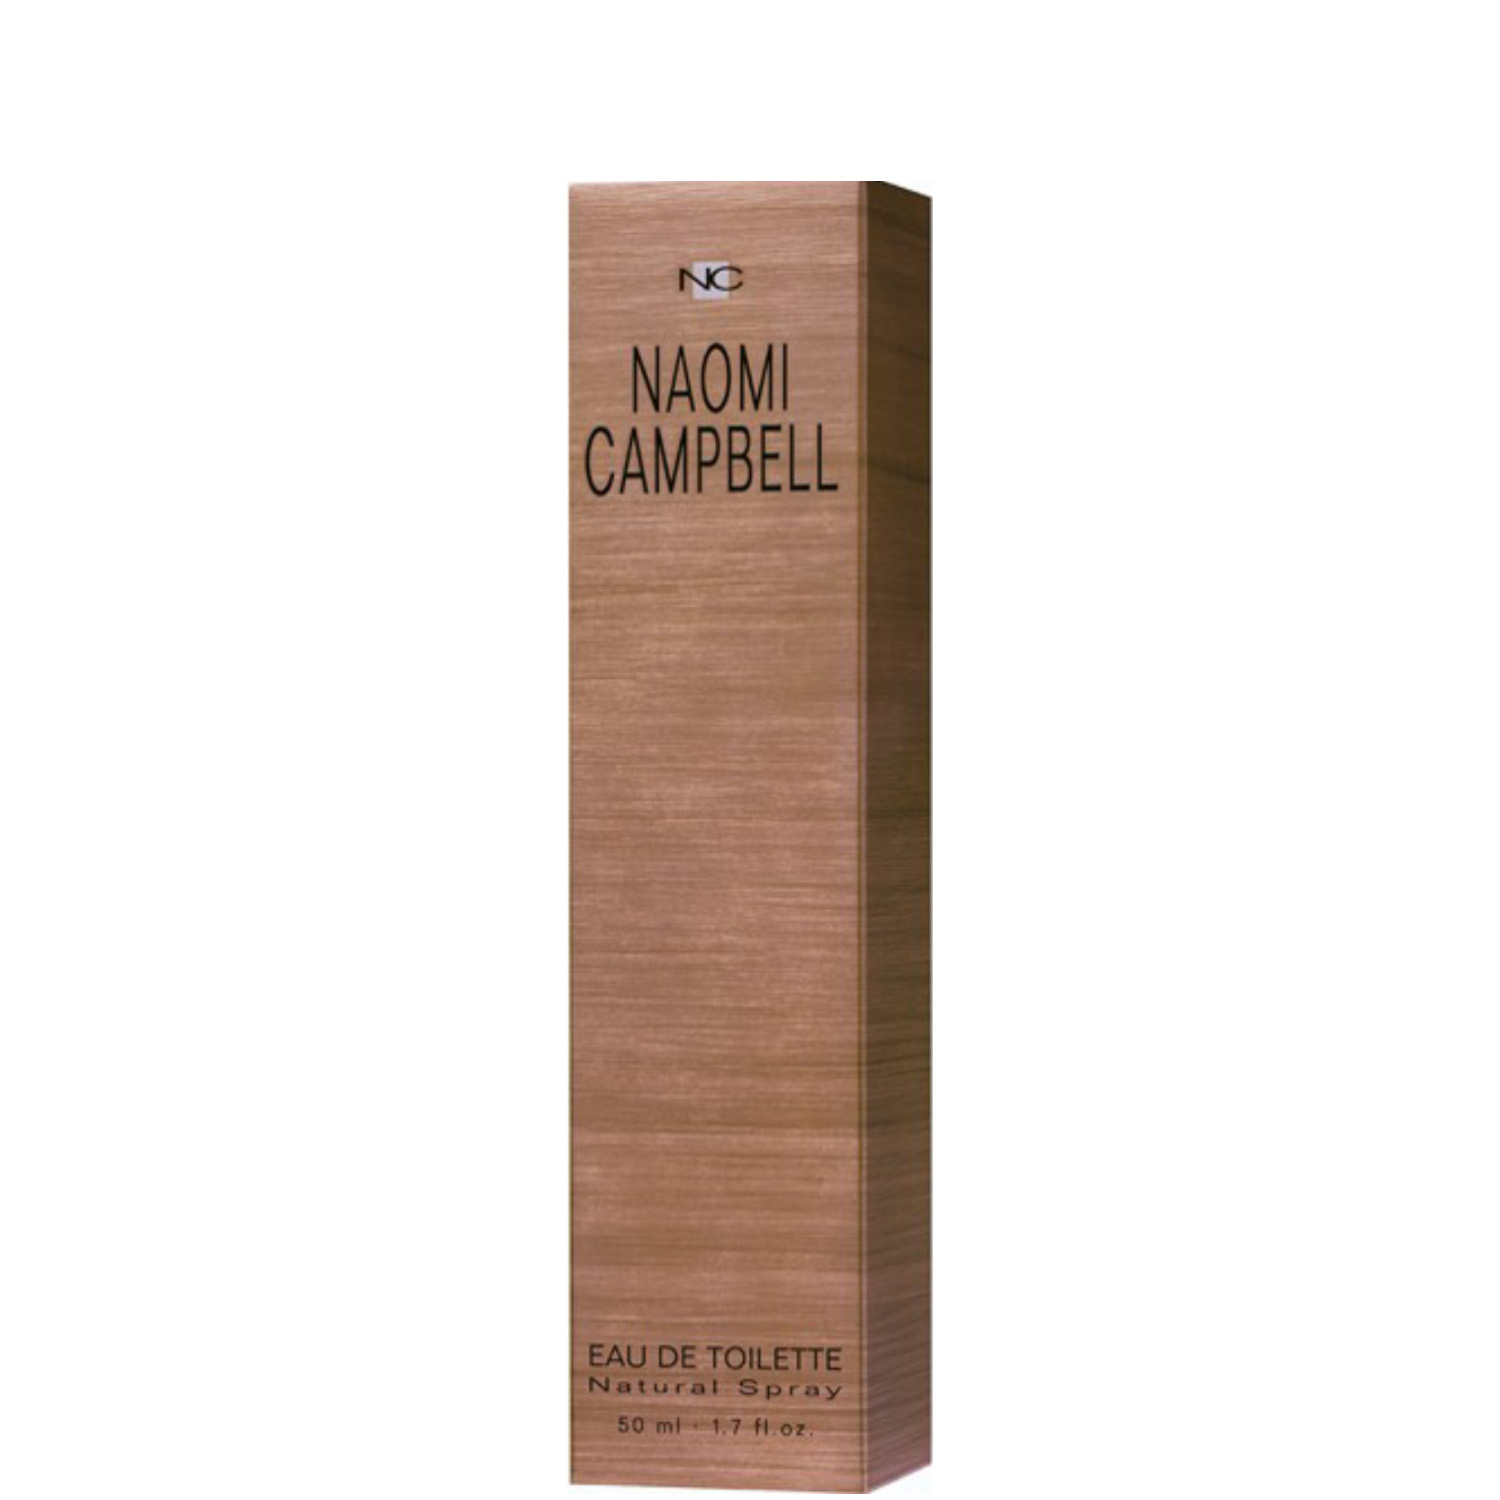 Naomi Campbell Eau de Toilette 50ml